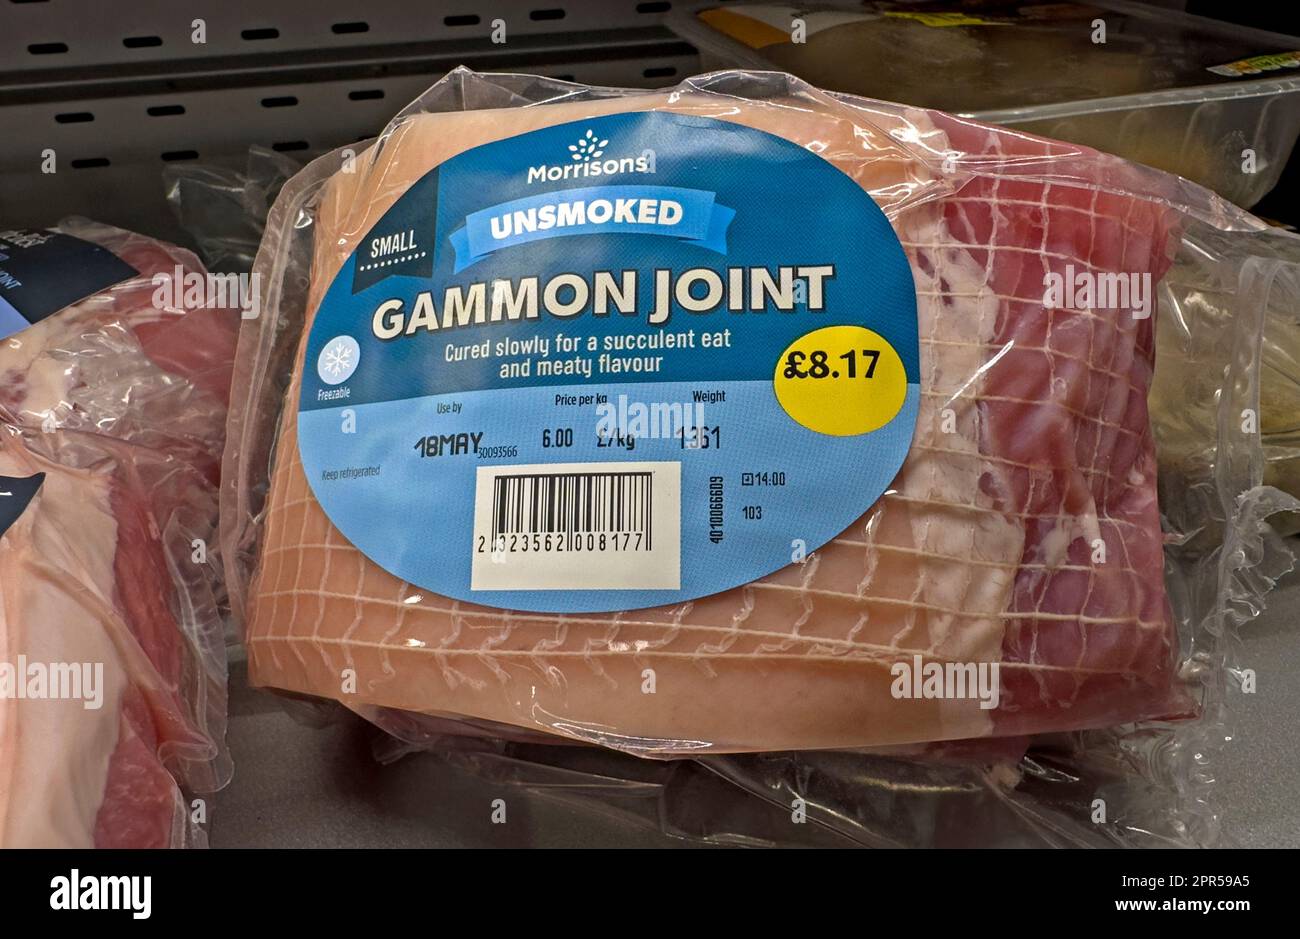 UnSmoked cured Gammon Joint im Morrisons Supermarkt, britischer Lebensmitteleinzelhändler, der mit Discounter konkurriert, England, Großbritannien Stockfoto